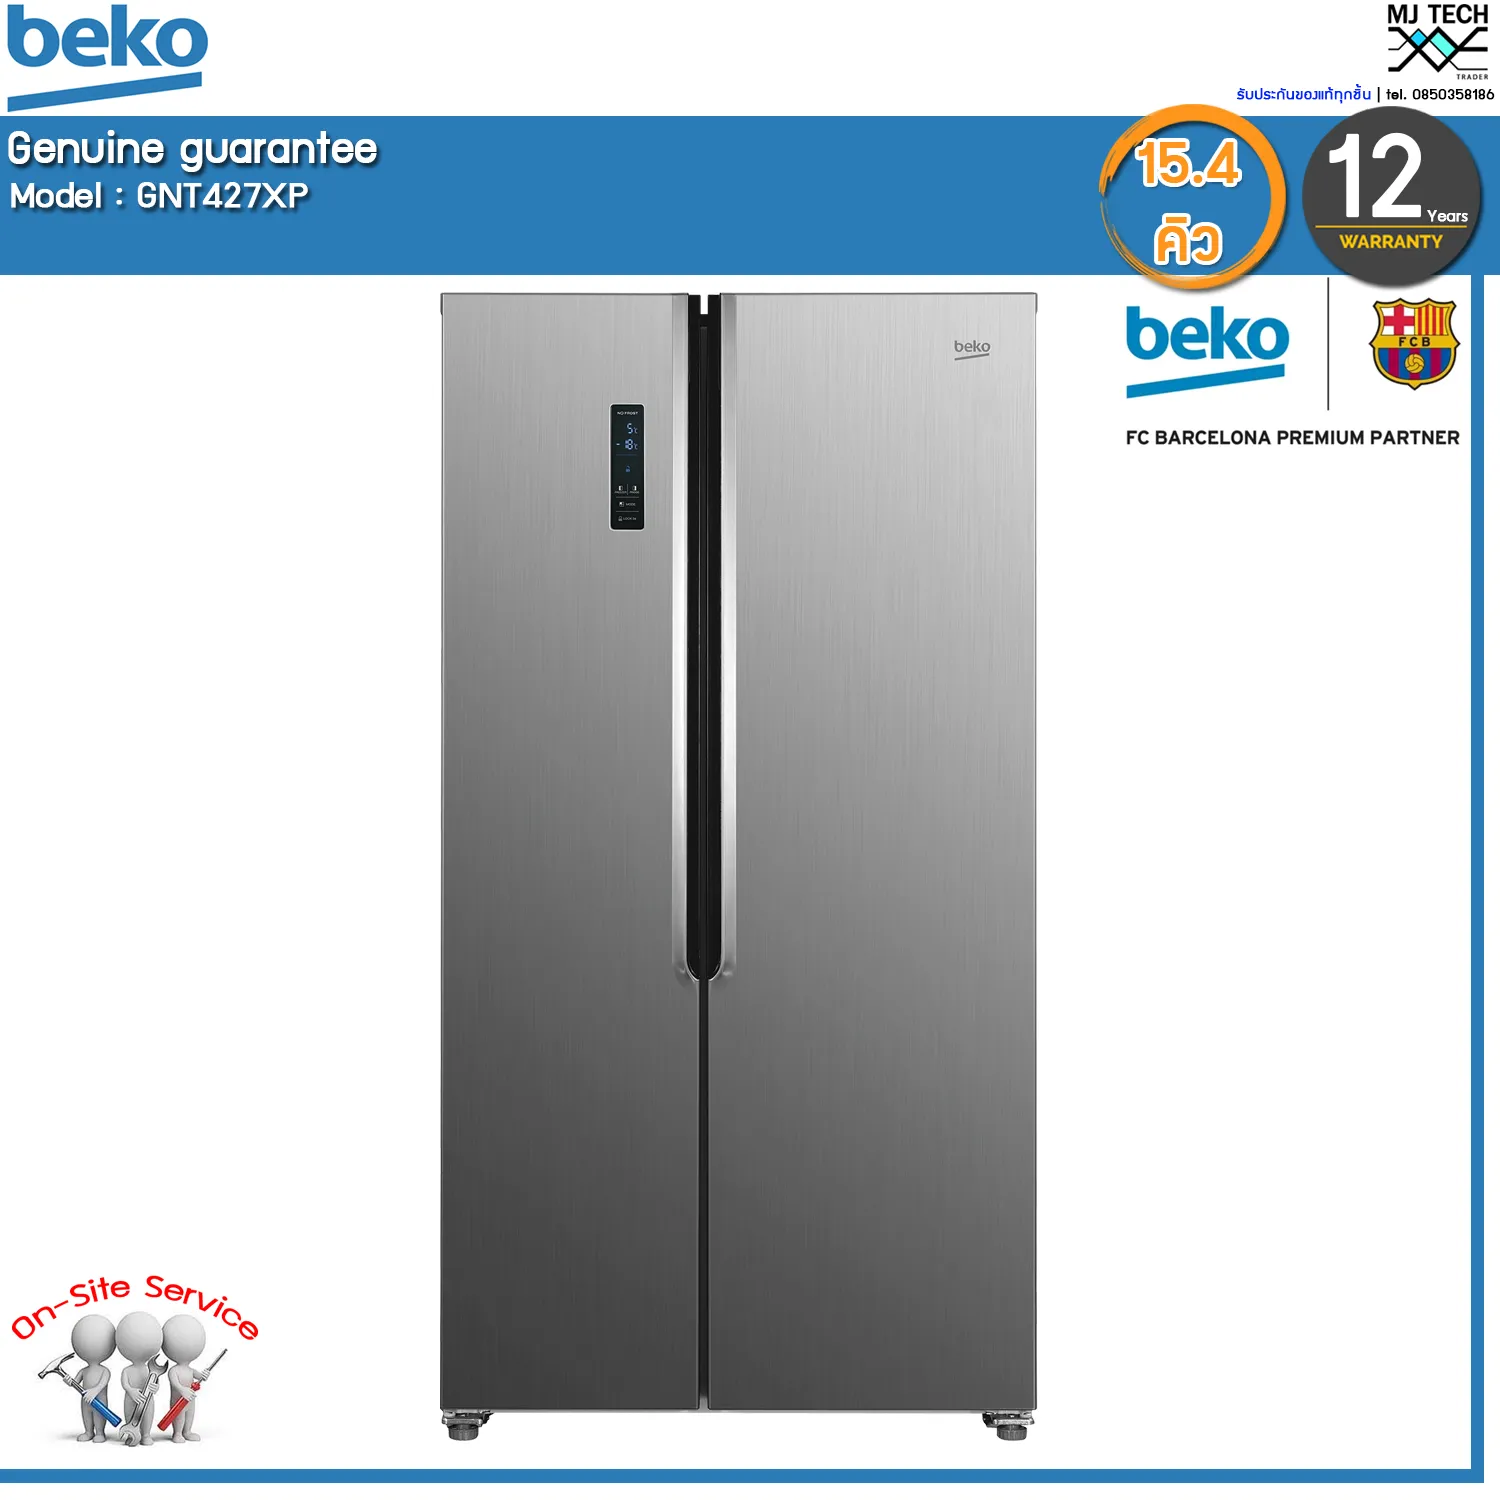 BEKO ตู้เย็น  Side By Side รุ่น GNT427XP: ตู้แช่เย็นและแช่แข็ง 15.4 คิว (ไซด์ บาย ไซด์, 90 ซม.) ส่งฟรี.